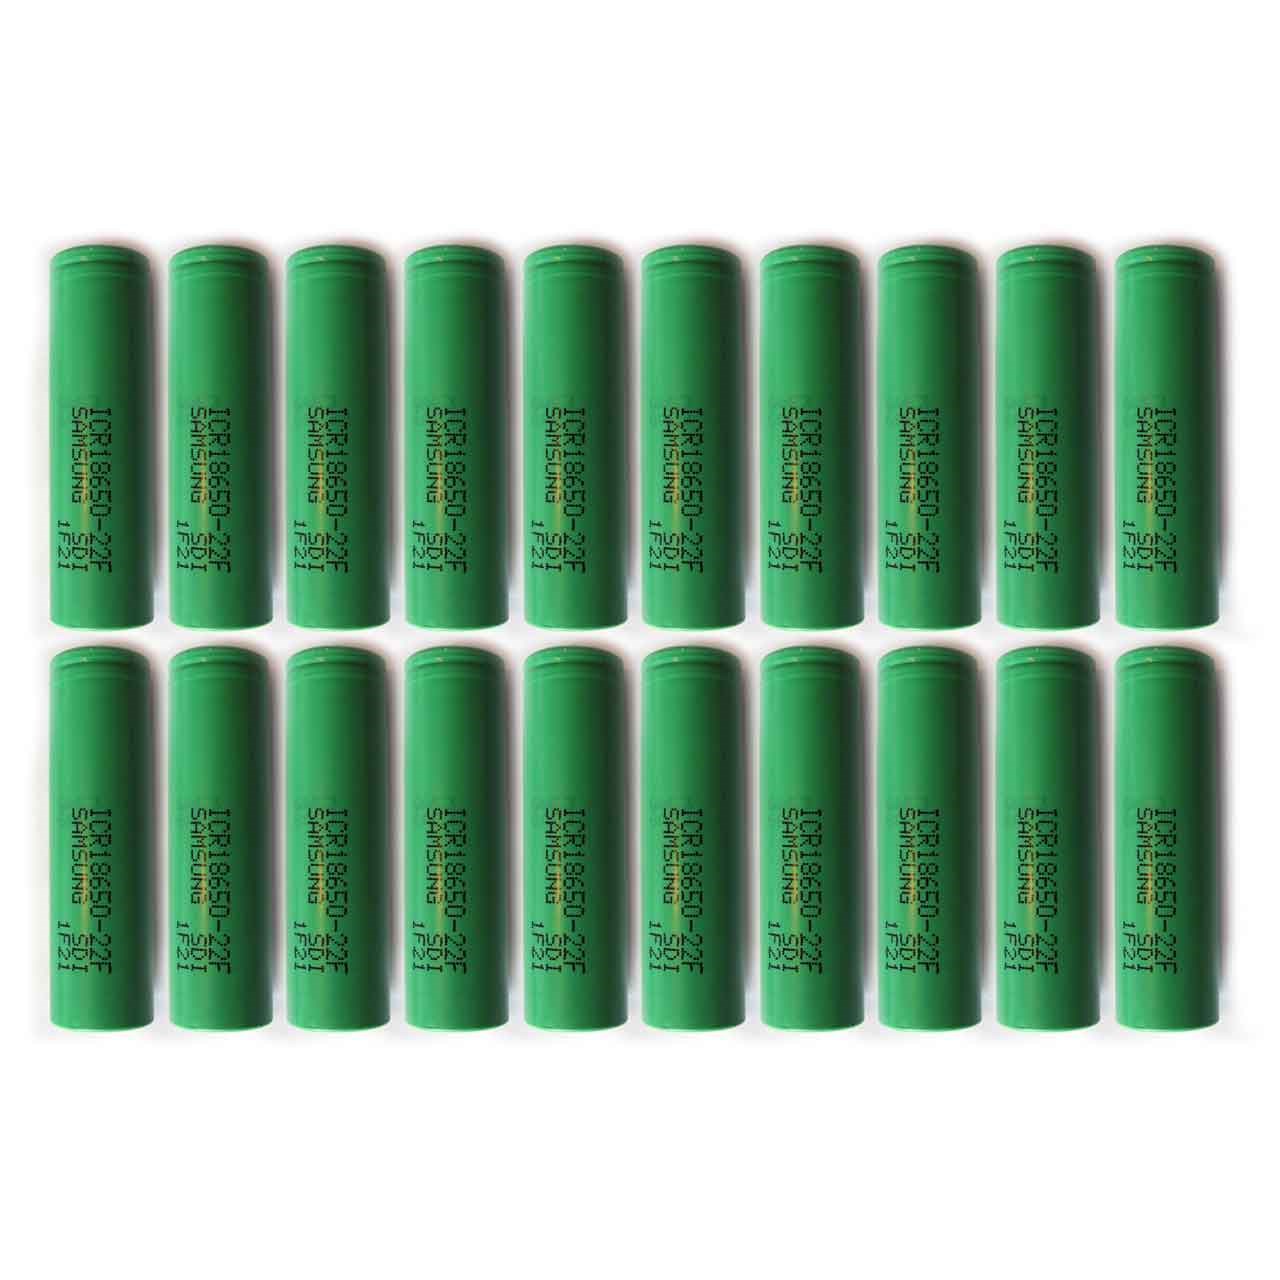 باتری لیتیم یون سامسونگ قابل شارژ مدلICR18650-22F ظرفیت 2200 میلی آمپر بسته 20 تایی